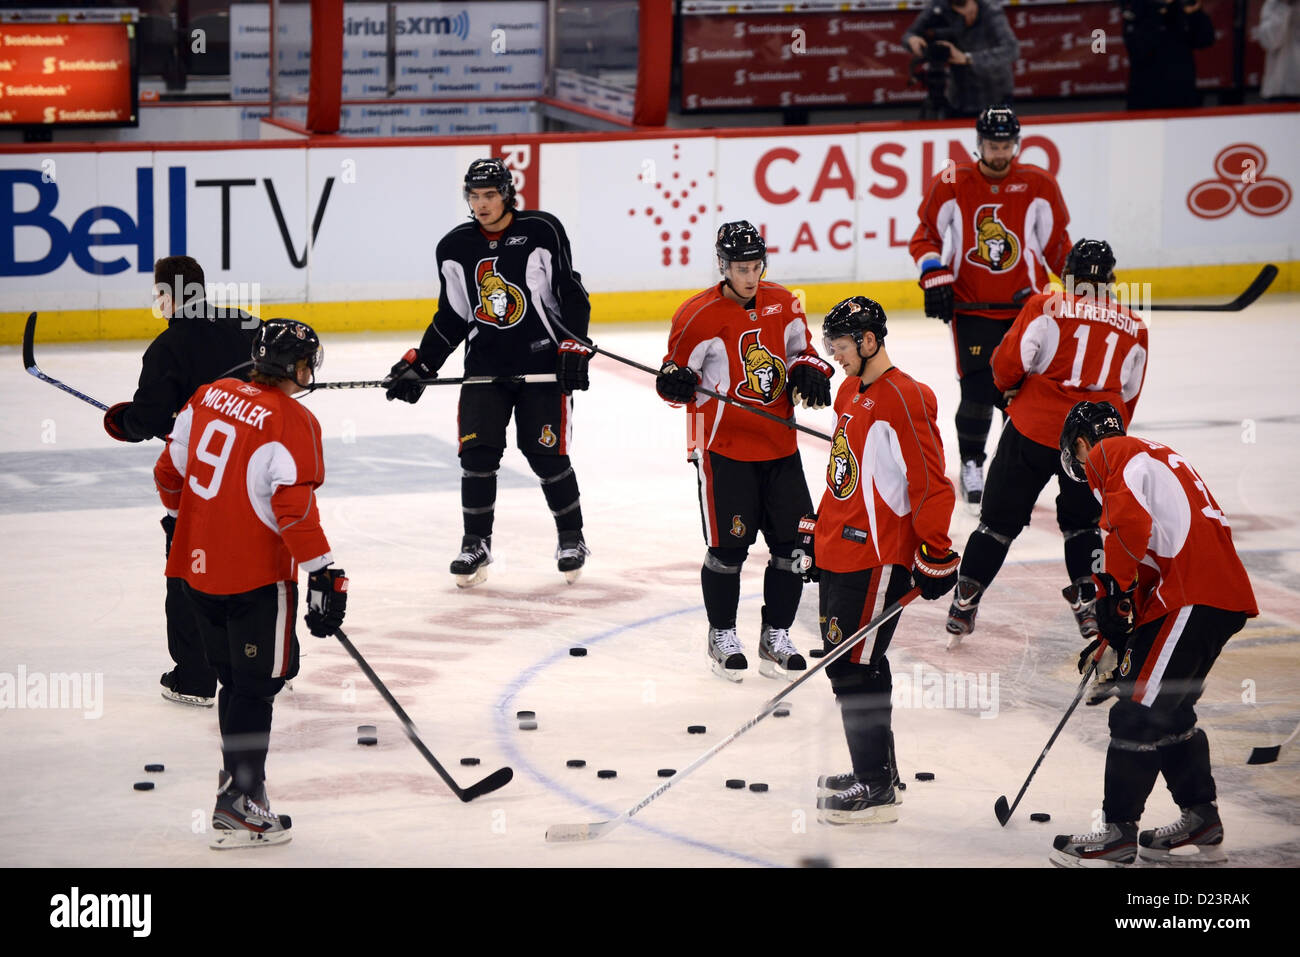 Ottawa, Ontario, Kanada. 13. Januar 2013.  Die Ottawa Senators zurück aufs Eis 13. Januar 2013 für ihre erste Praxis der Trainingslager nach dem NHL-Lockout 12. Januar 2013 offiziell beendet wurde.  Ihre Praxis werden die Fans als eine Geste, um die Fans zurück zu gewinnen zugänglich sein. Ottawa, Ontario, Kanada.  Die NHL-Teams spielen jeweils eine 48 Wildsaison im Gegensatz zu den üblichen 82 Spiele. Stockfoto